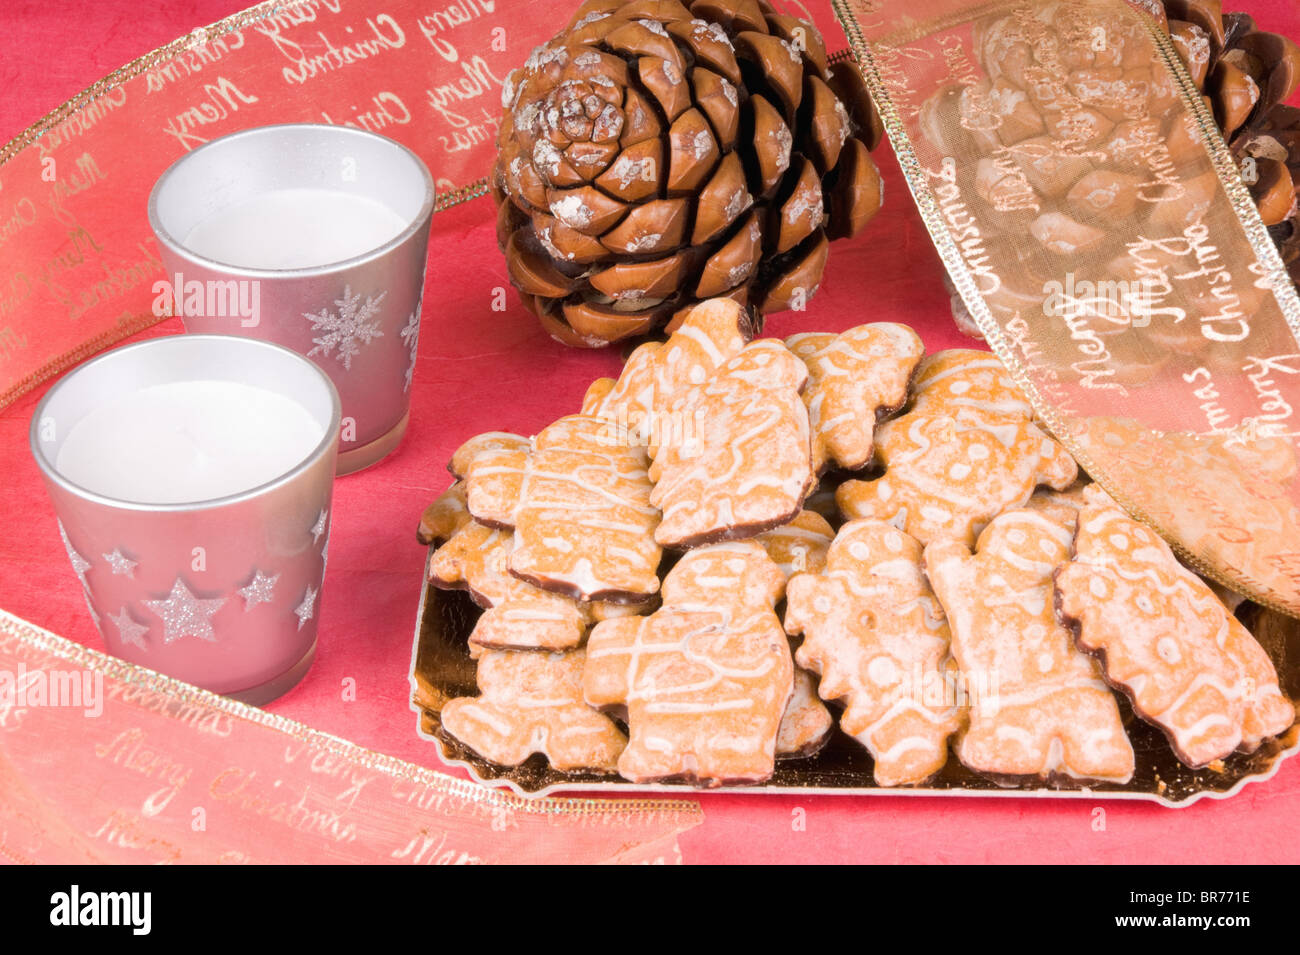 Composition de Noël : gingerbread men, ruban de Noël, des pommes de pin et des bougies. Studio shot sur fond rouge Banque D'Images